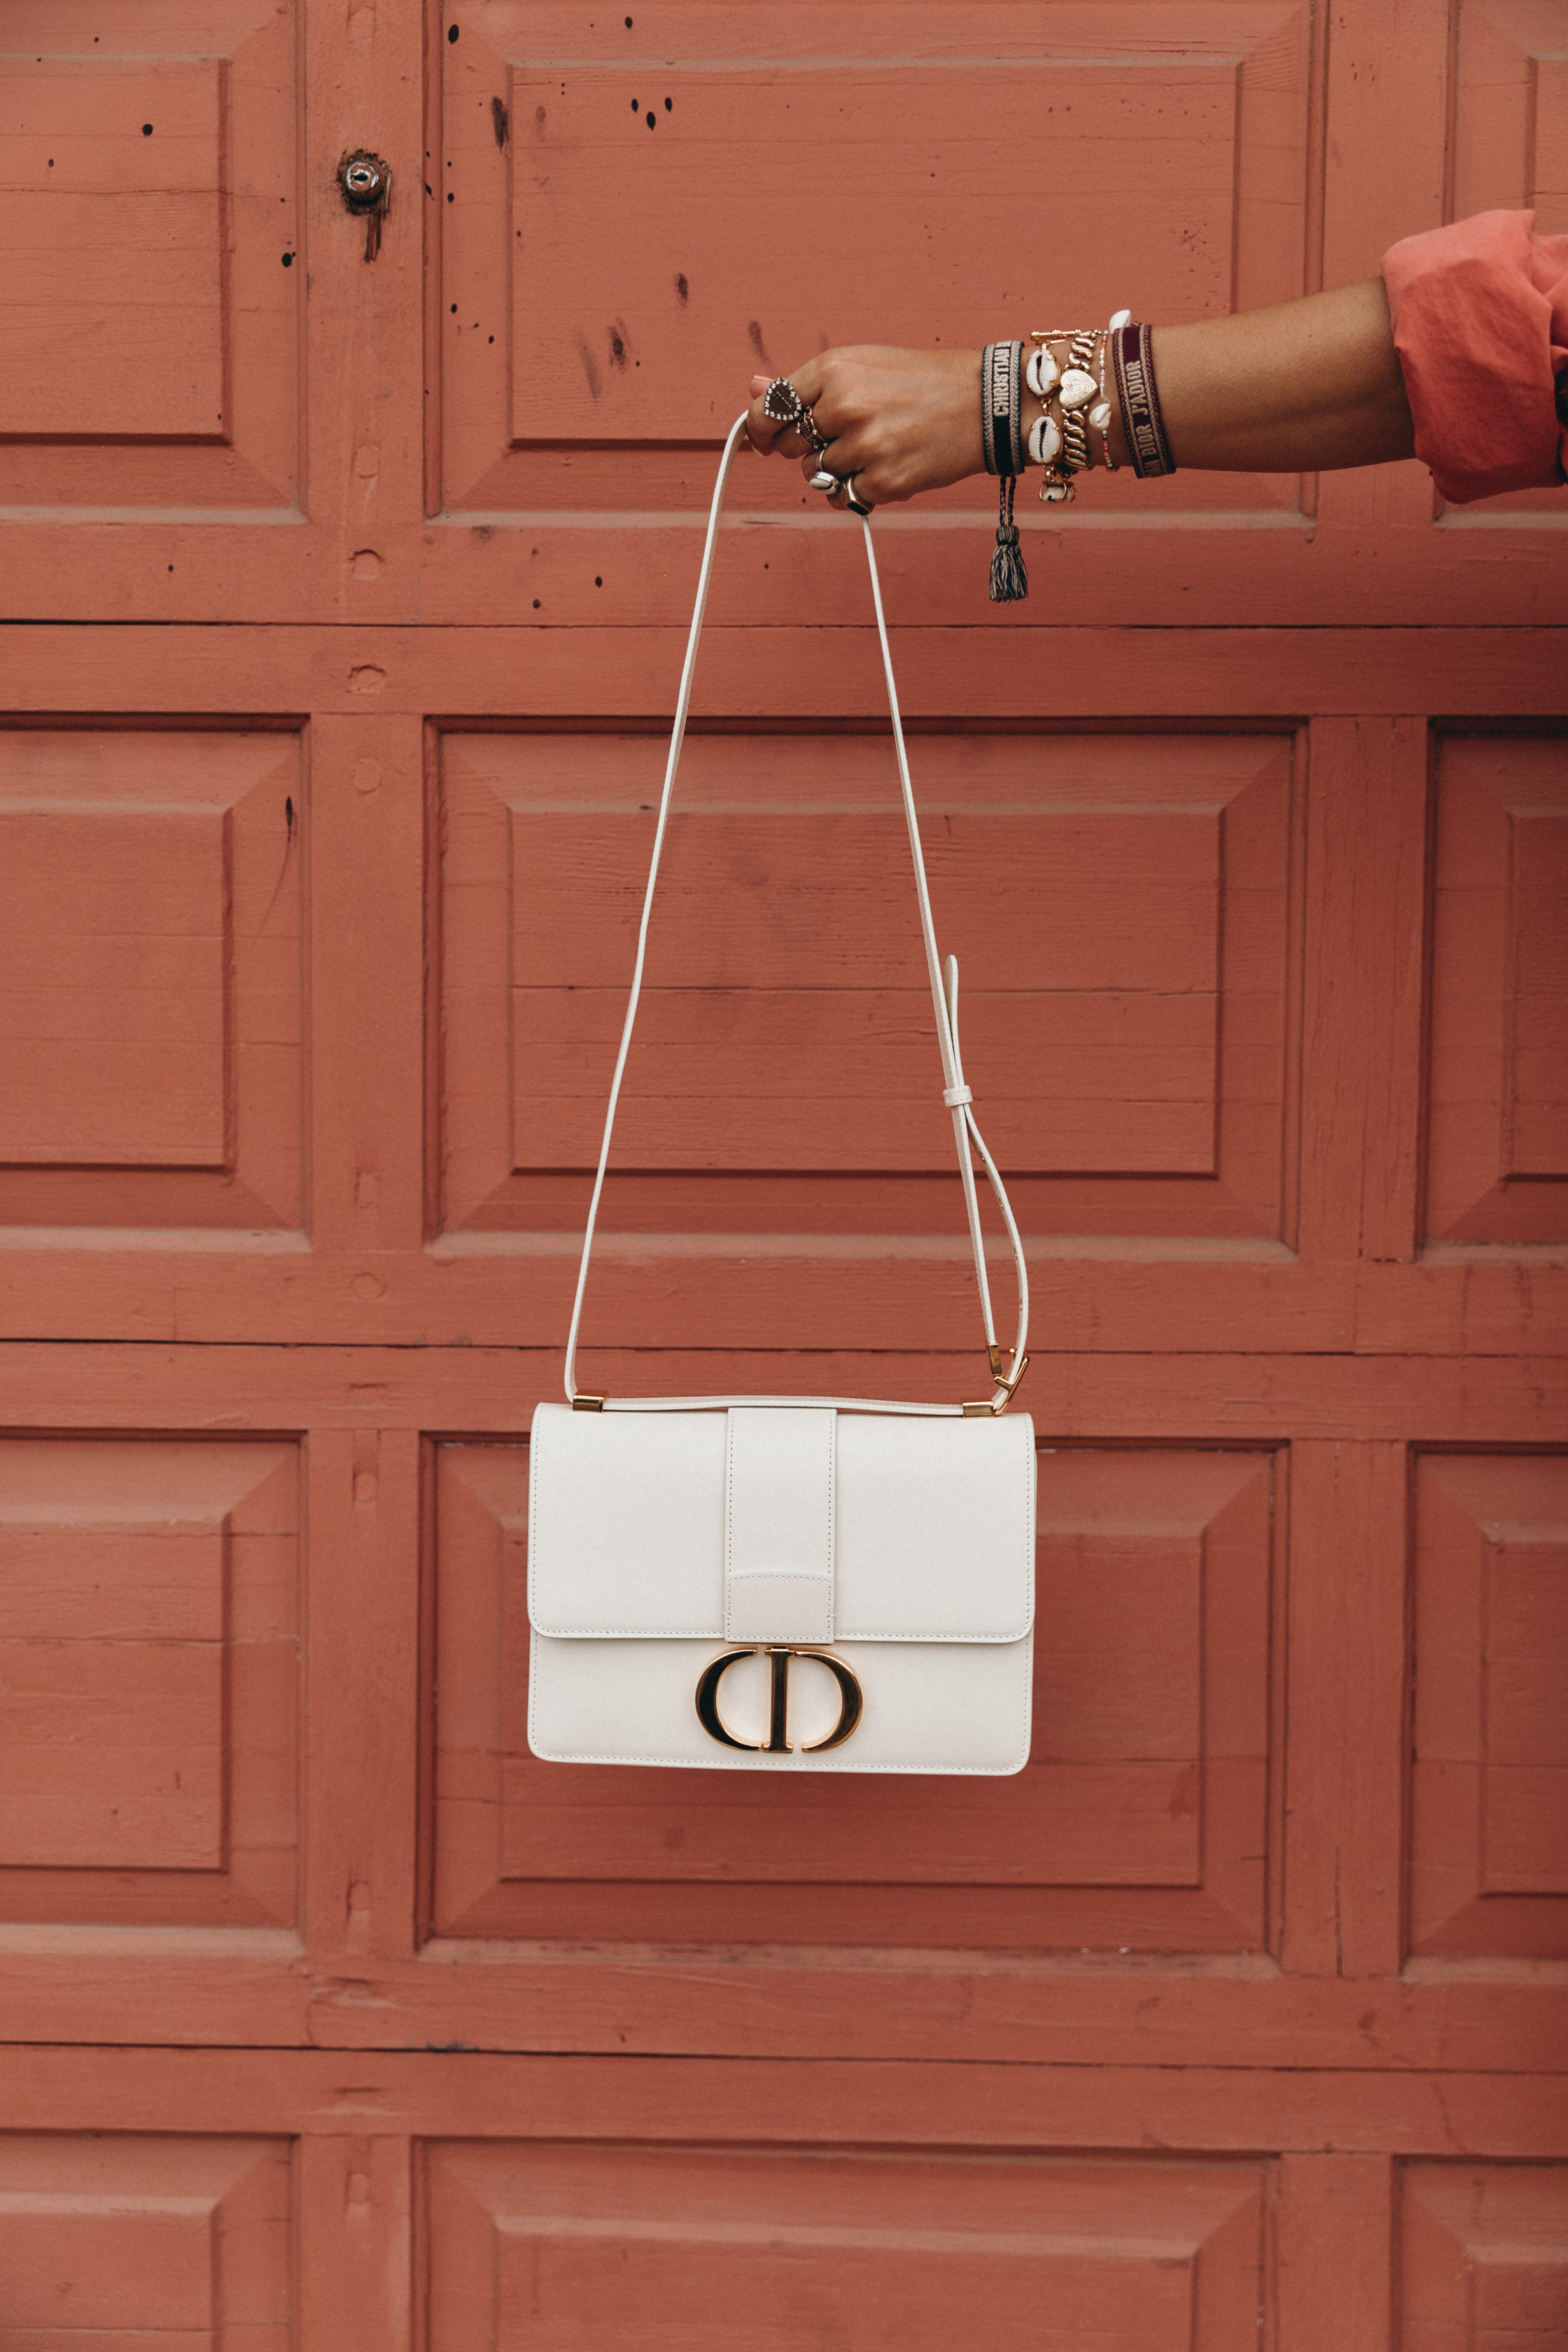 Dior 30 montaigne je nova it torba koju obožavaju trendseterice!